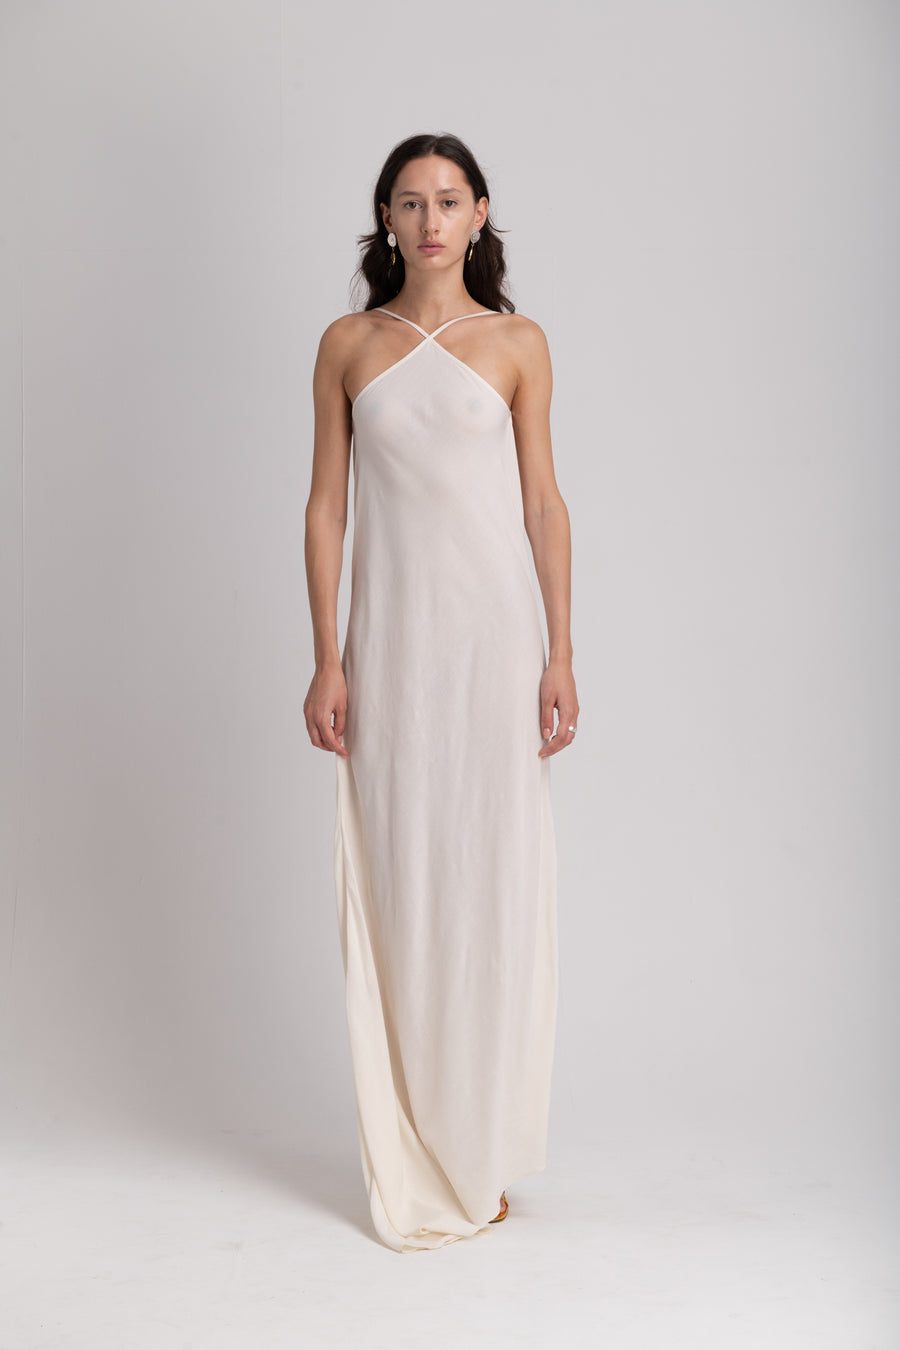 THE BEACH DRESS - WHITE